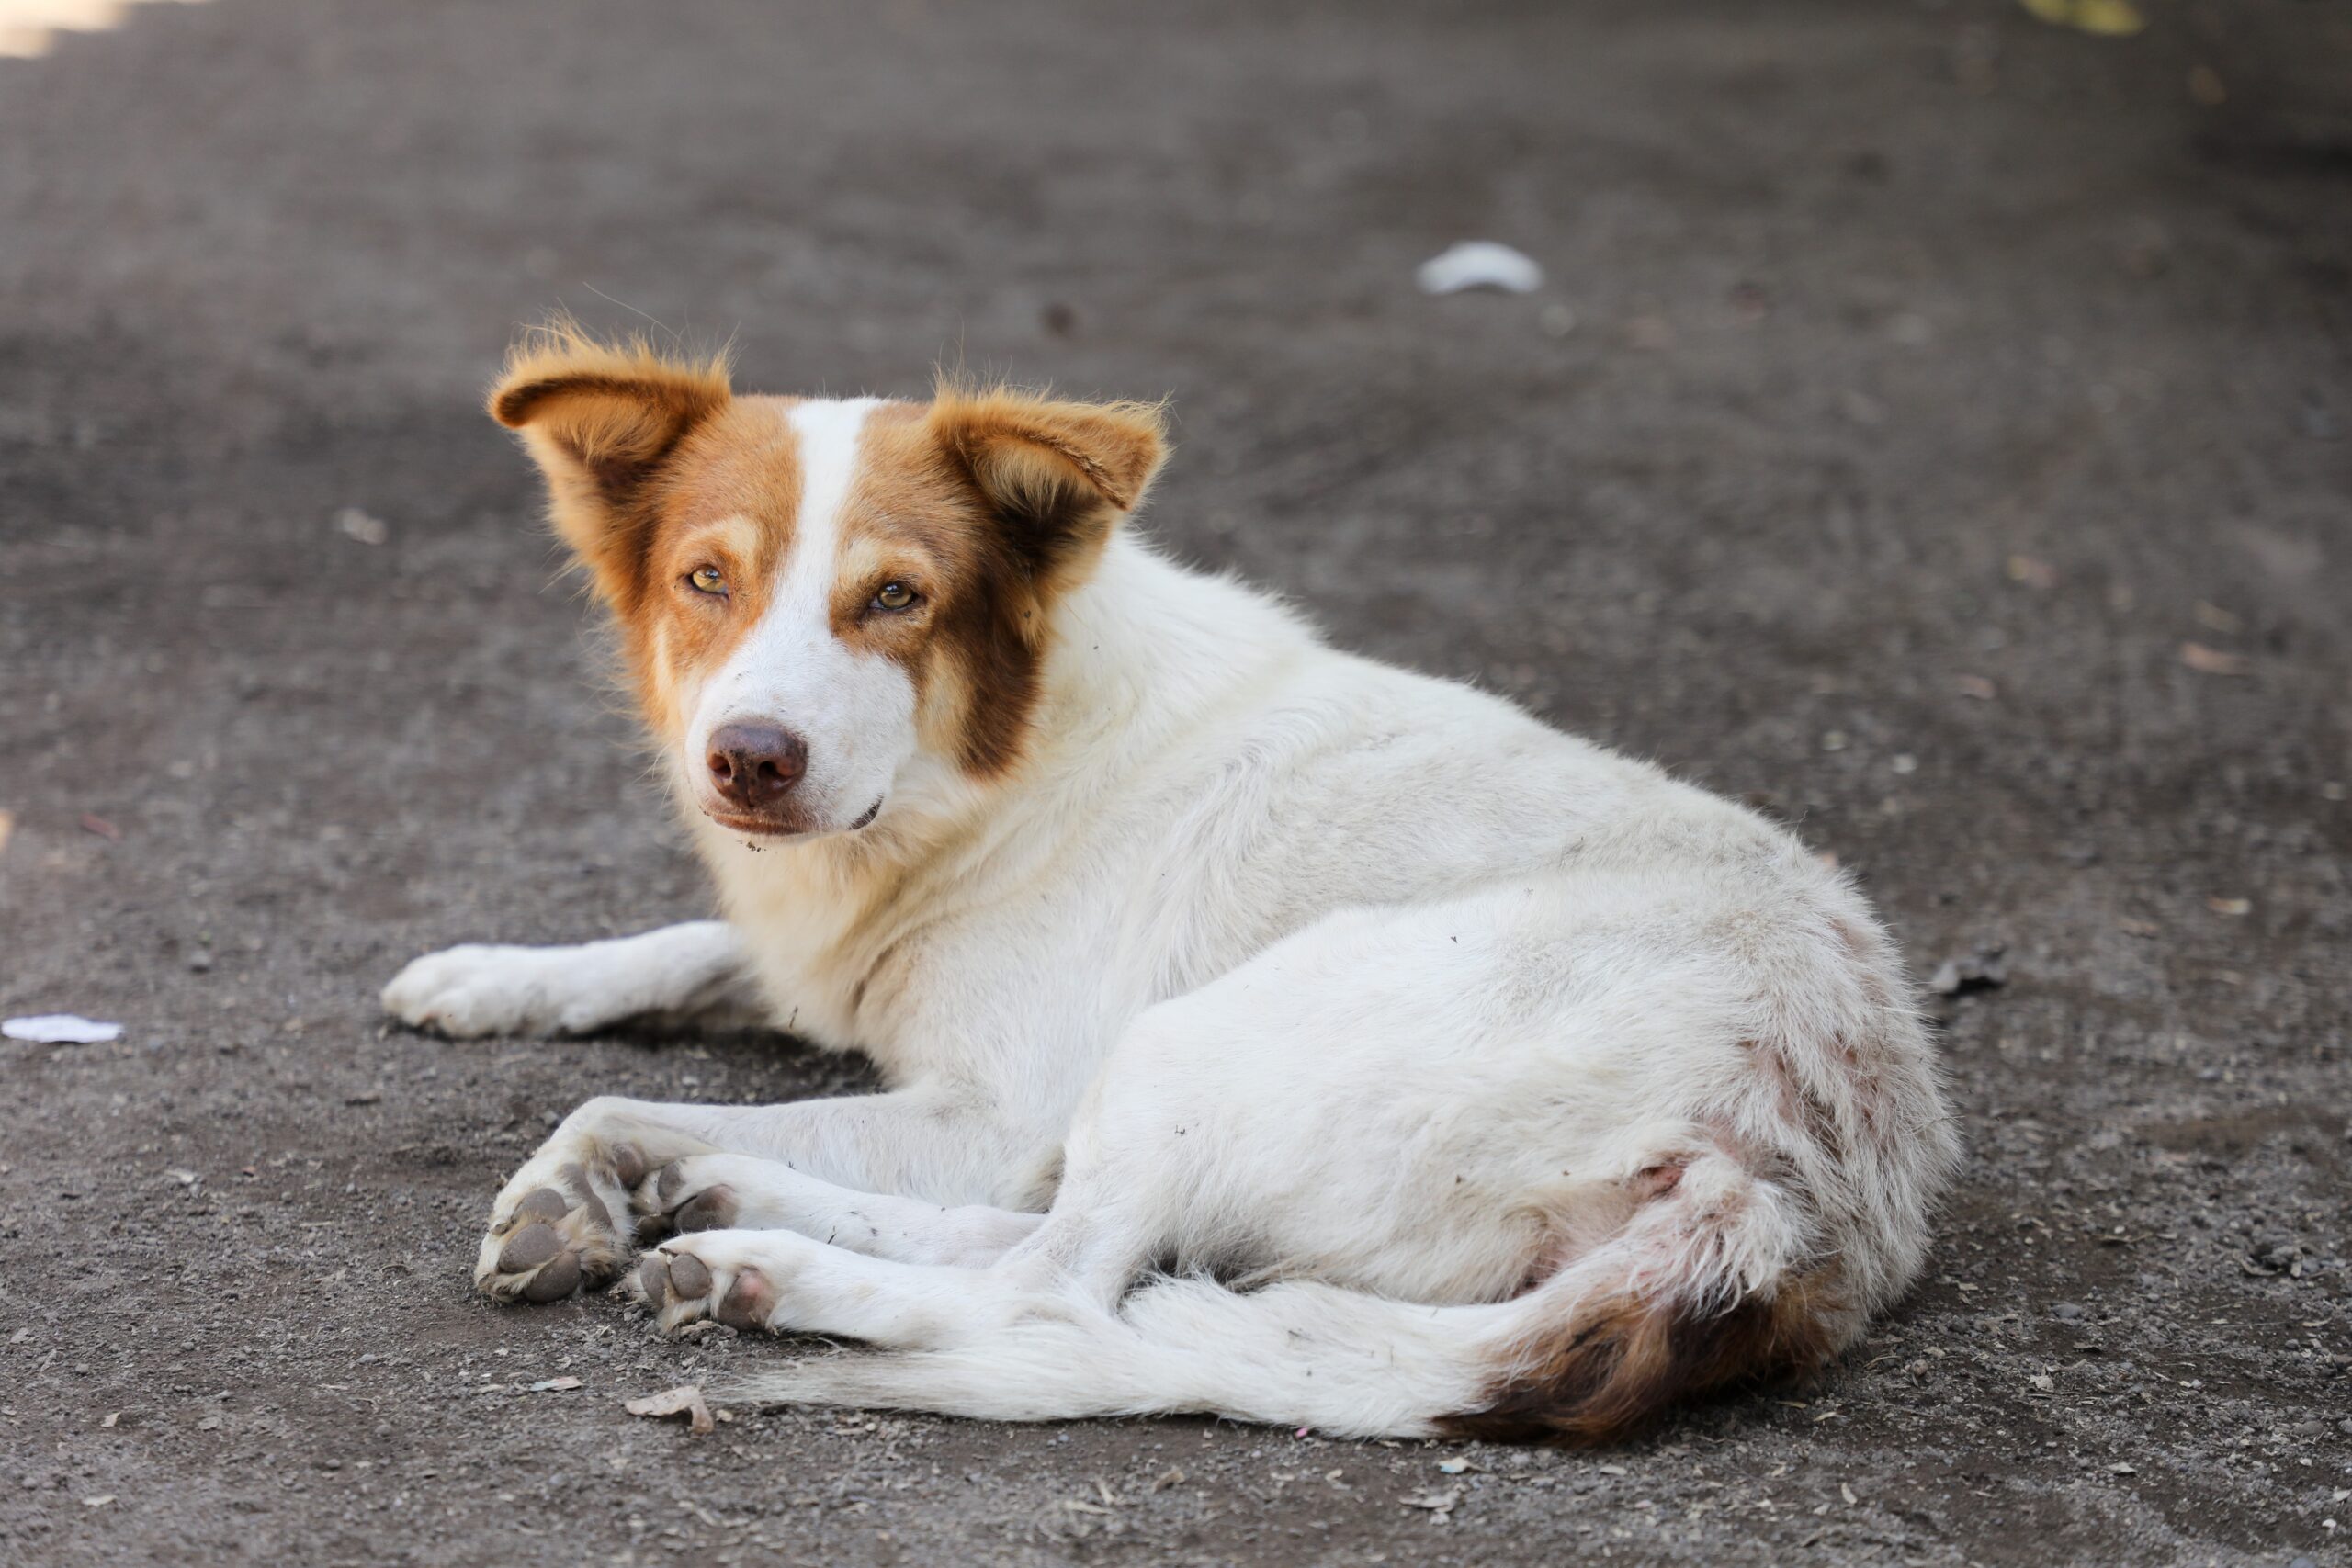 Bienestar Animal investiga envenenamiento de perros en Concepción Batres, Usulután